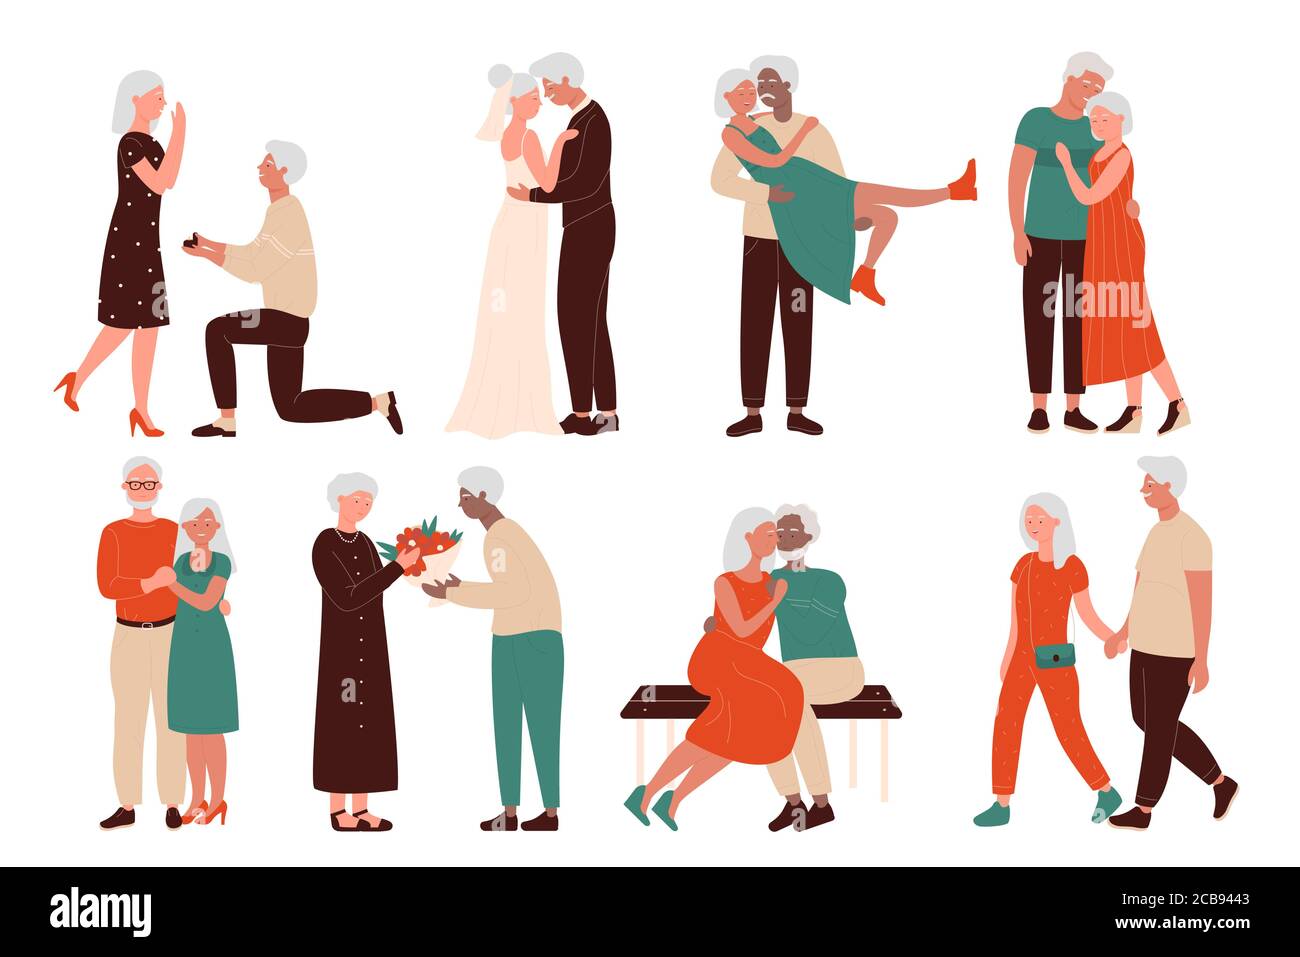 Jeu d'illustrations vectorielles plates de personnages Happy Loving couples âgés. Les hommes et les femmes seniors se réunissent, proposition de mariage, mariage, assis dans un hug sur le banc, marchant main dans la main Illustration de Vecteur